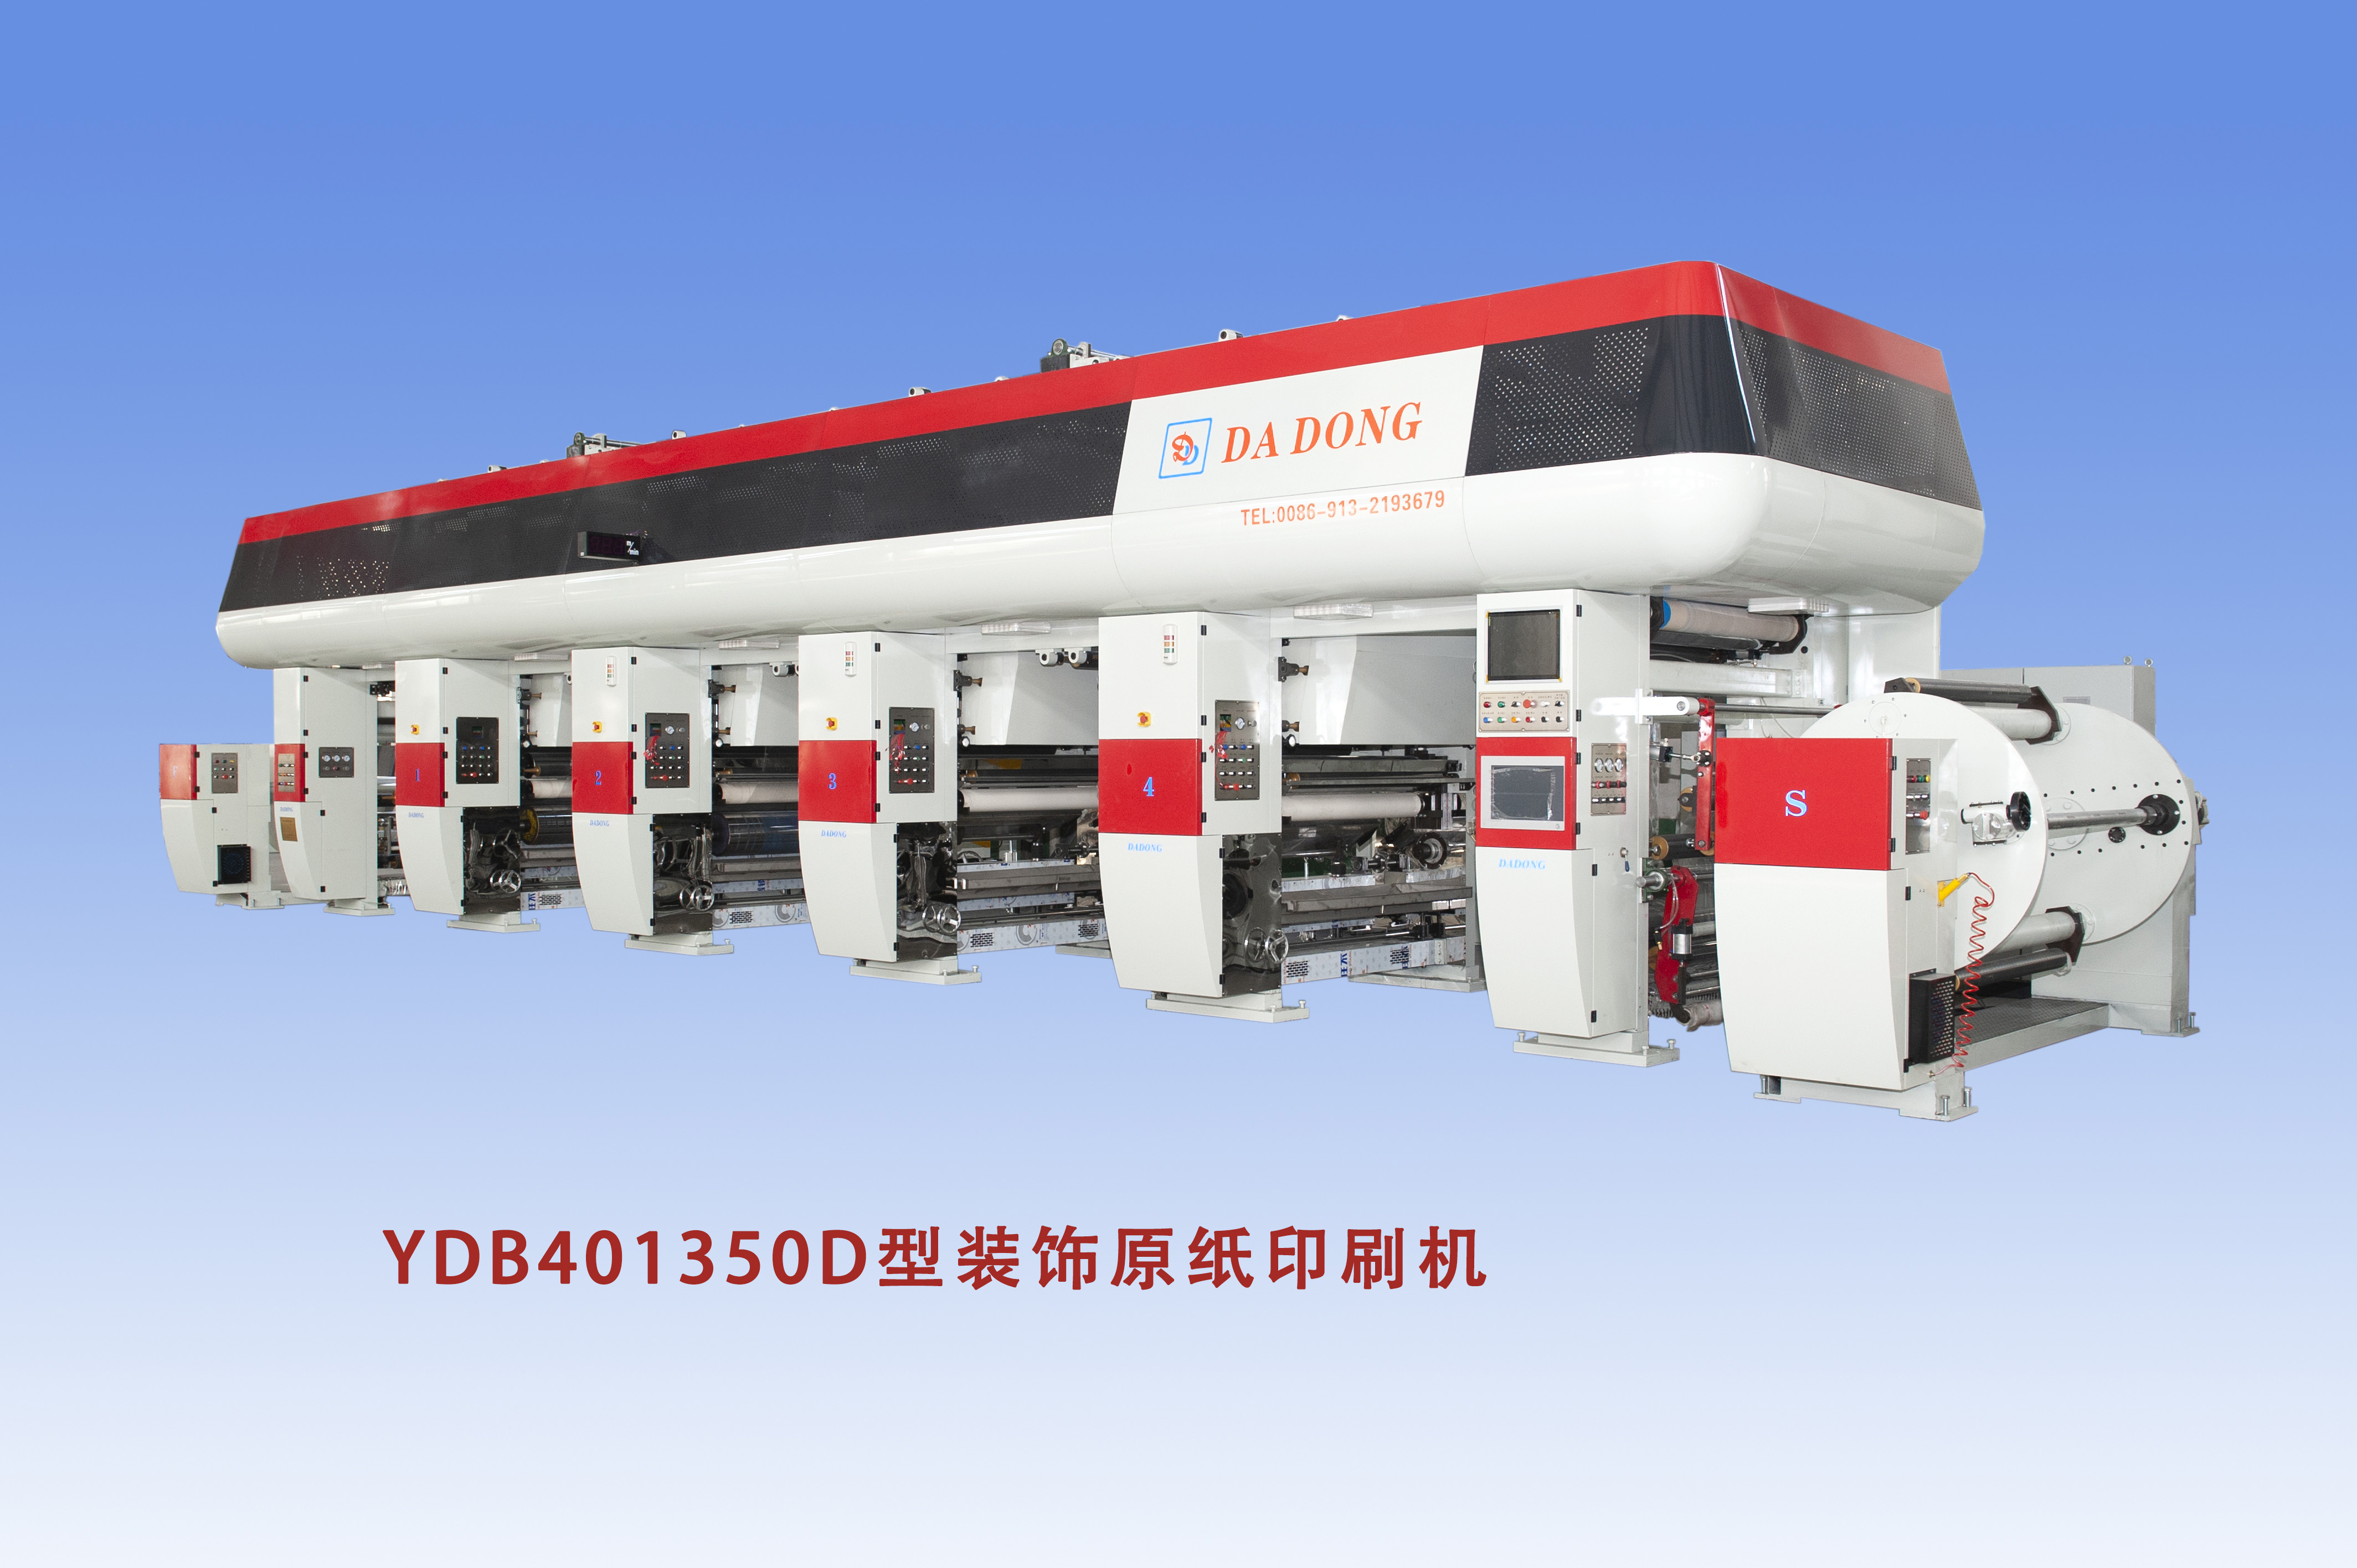 YDB401350D型裝飾原紙印刷機